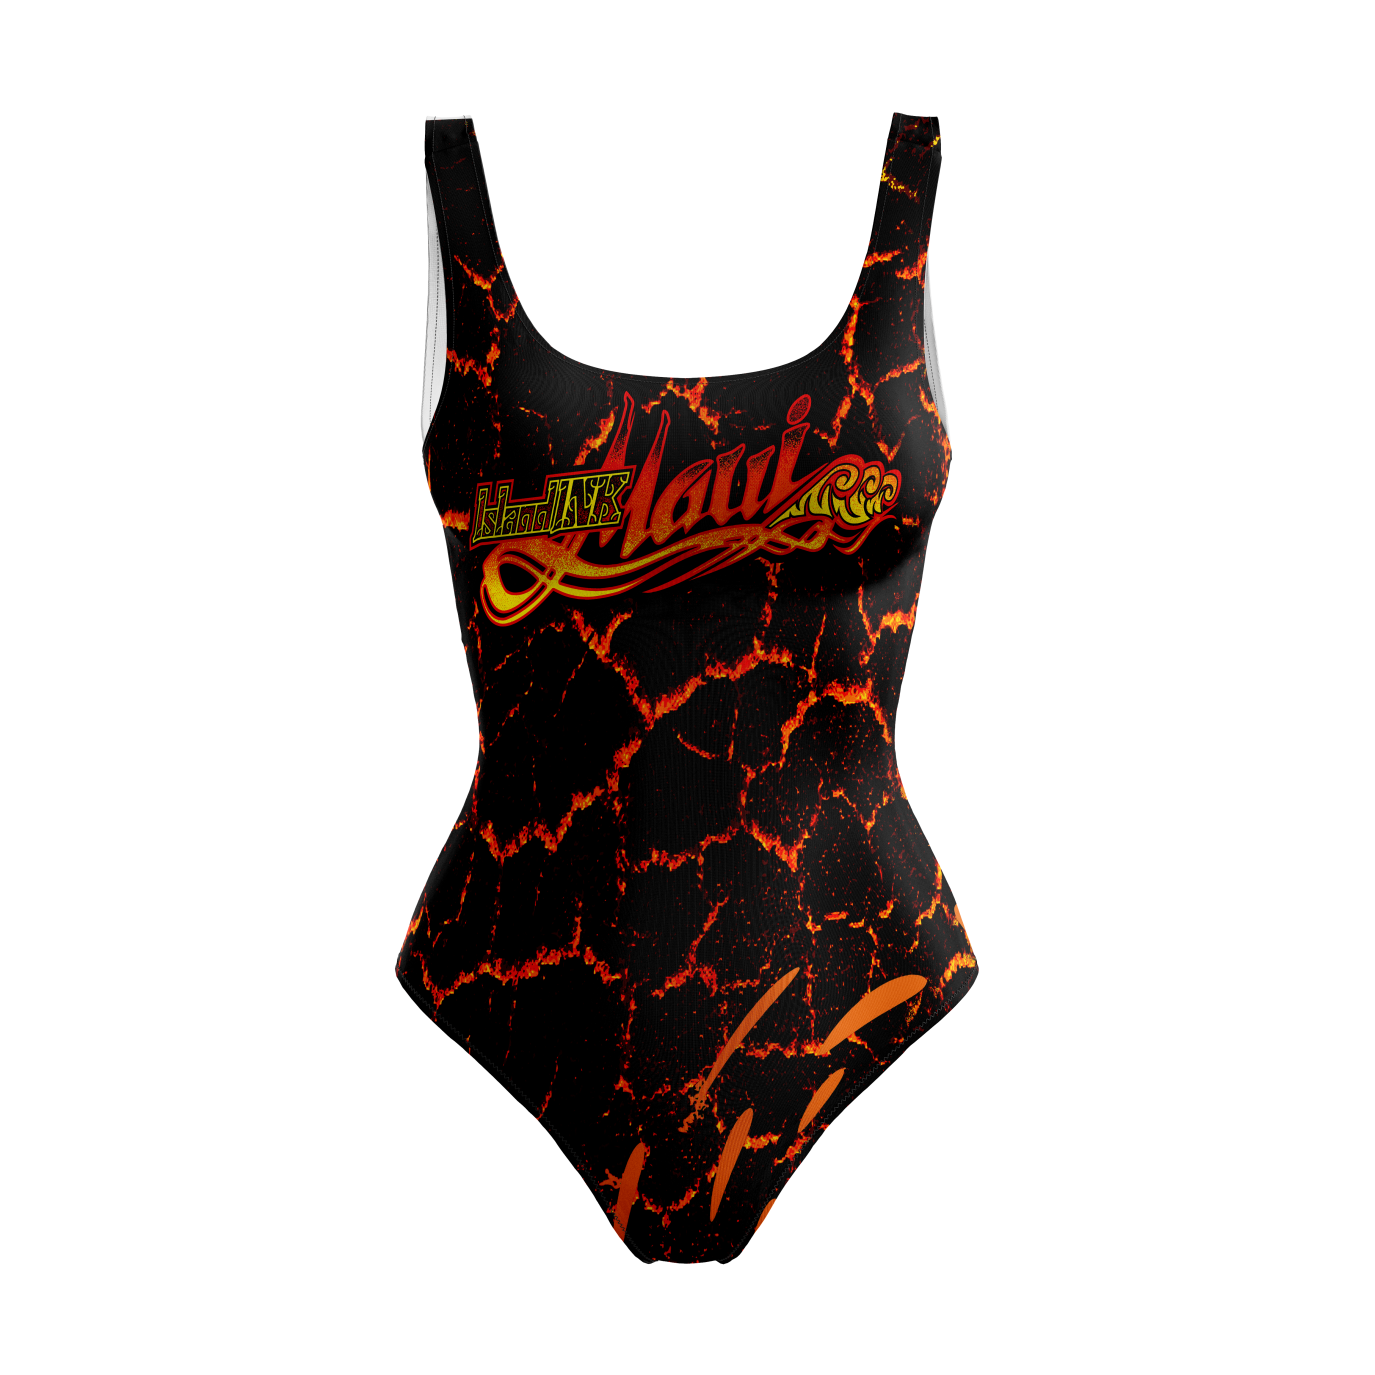 Women's Lava Flow classic standard cut one piece swim suit